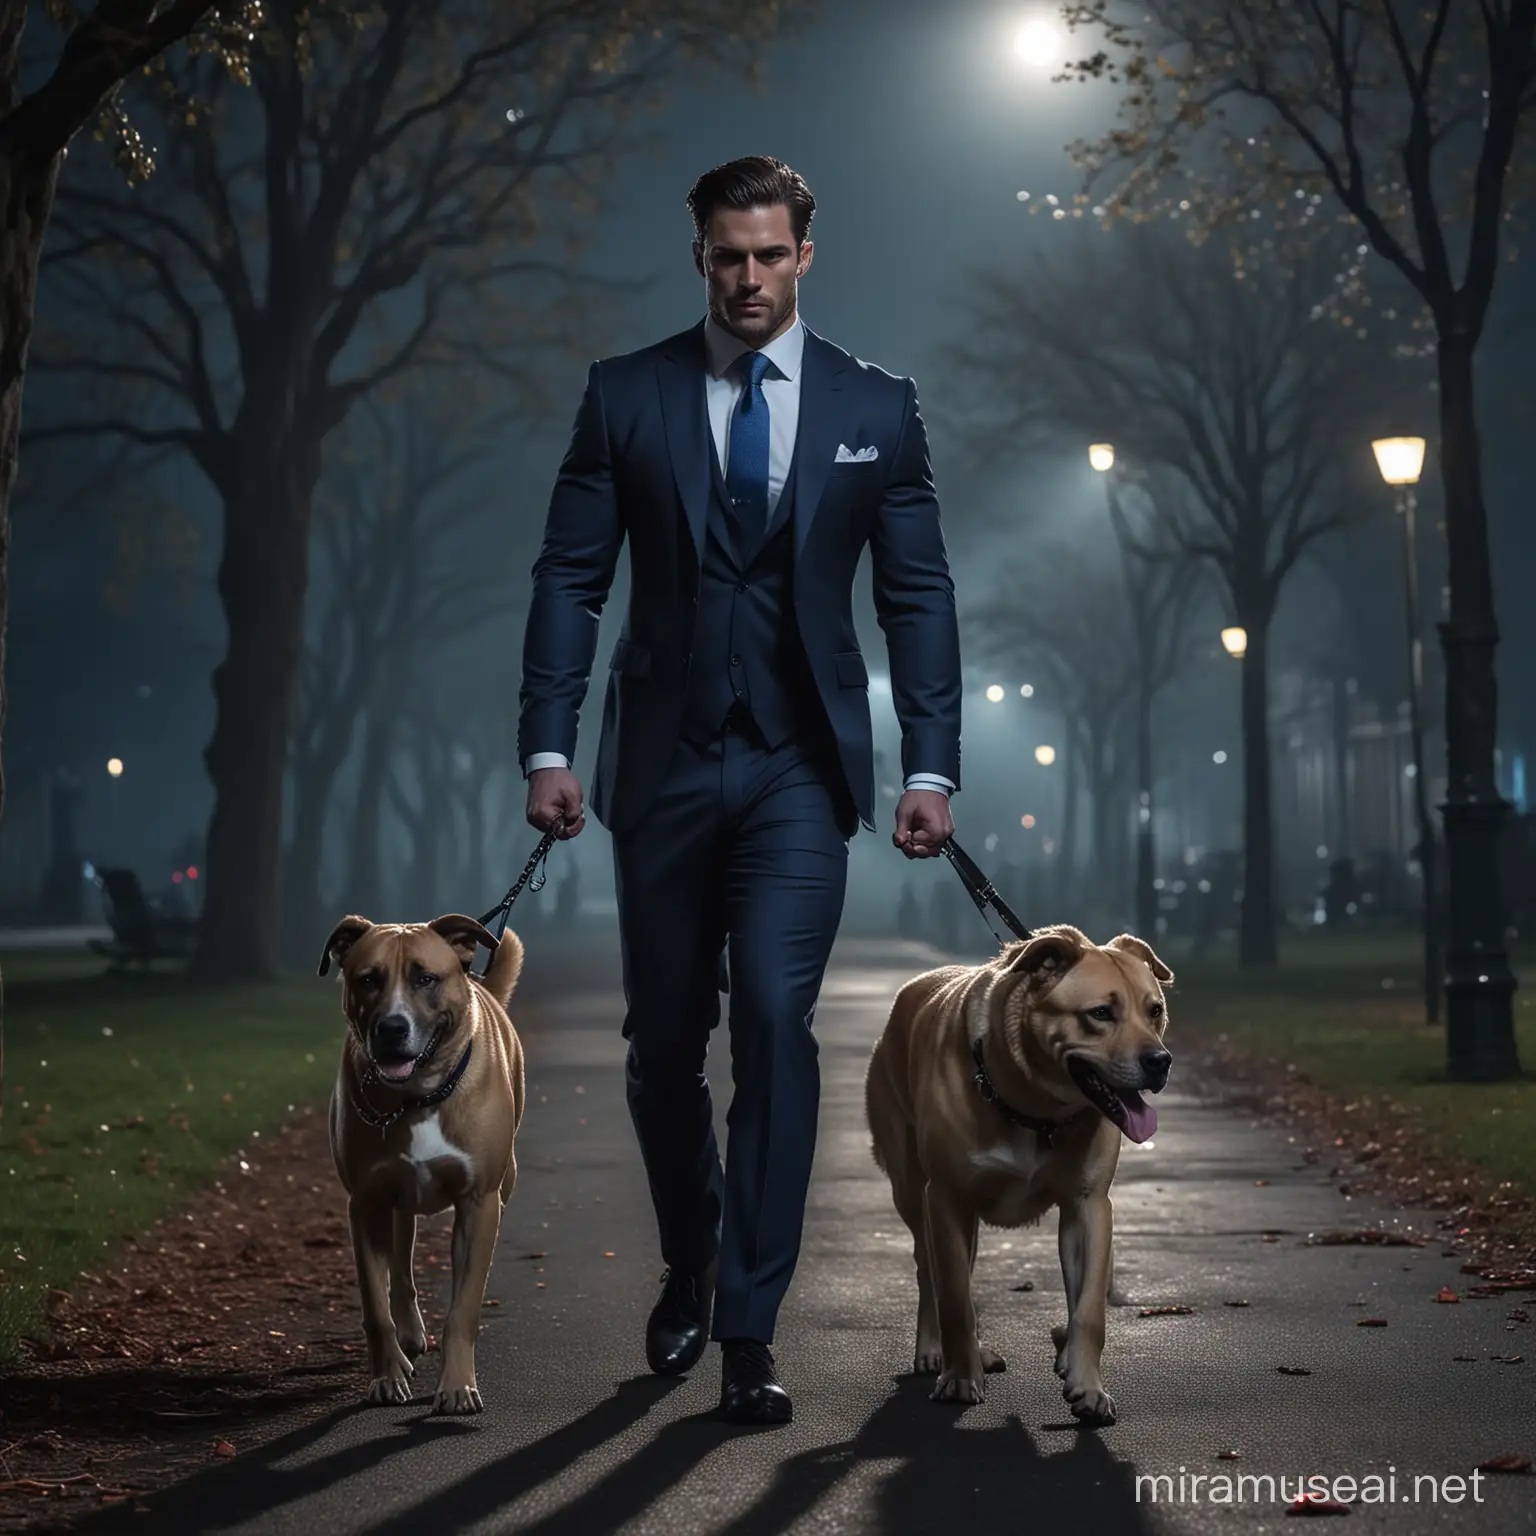 Powerful Man Walking Fierce Dog in Moonlit Park